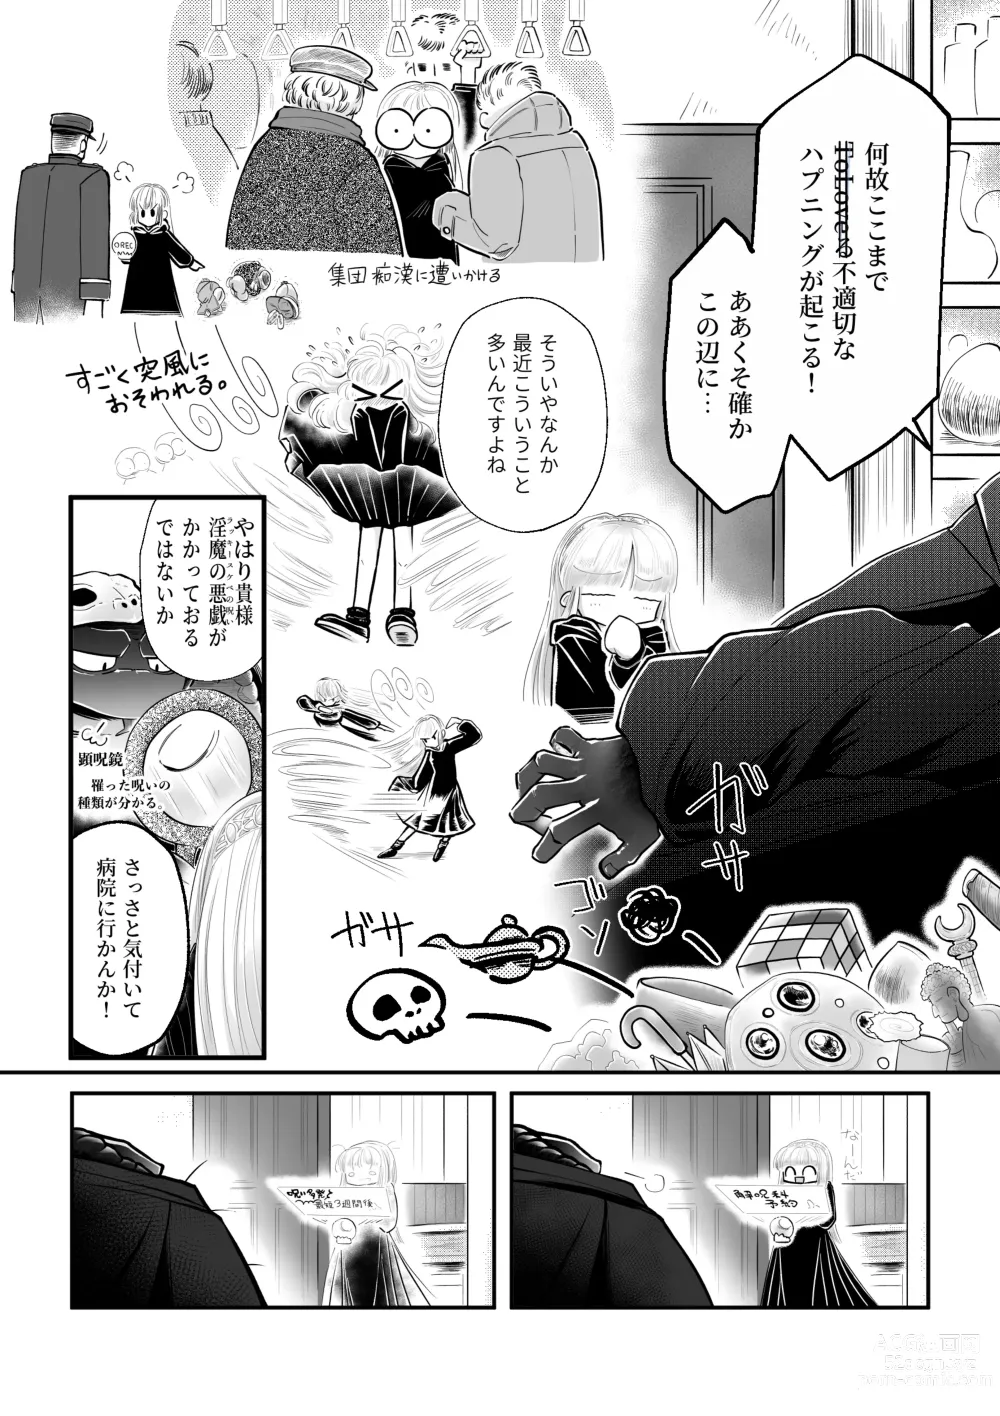 Page 11 of doujinshi Dakatsu no Gotoku Osoreteita Sensei to Kazukazu no Ero Happening ni Mimawarete Kindan no Kankaku Shadan Otoshiana Kouishou Chiryou